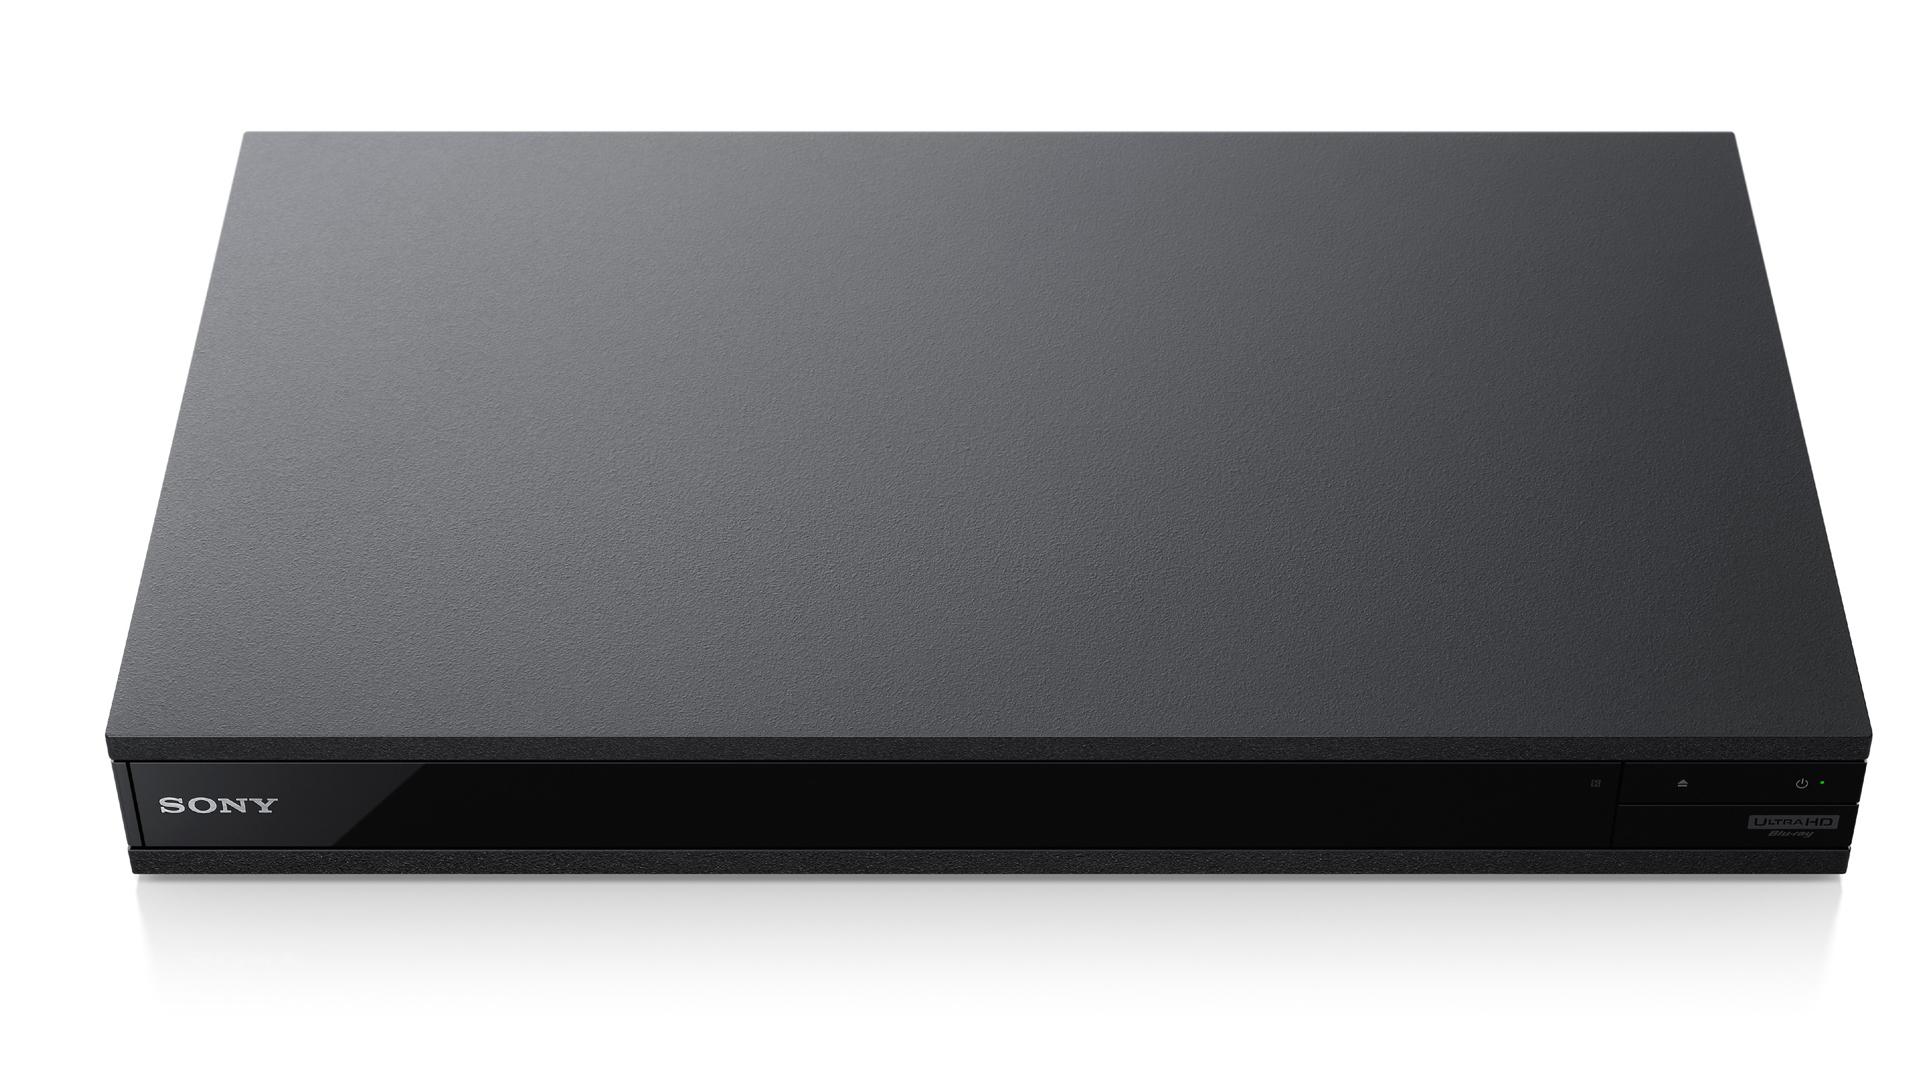 Sony UBP-X800 4K UHD Blu-ray player review | TechRadar